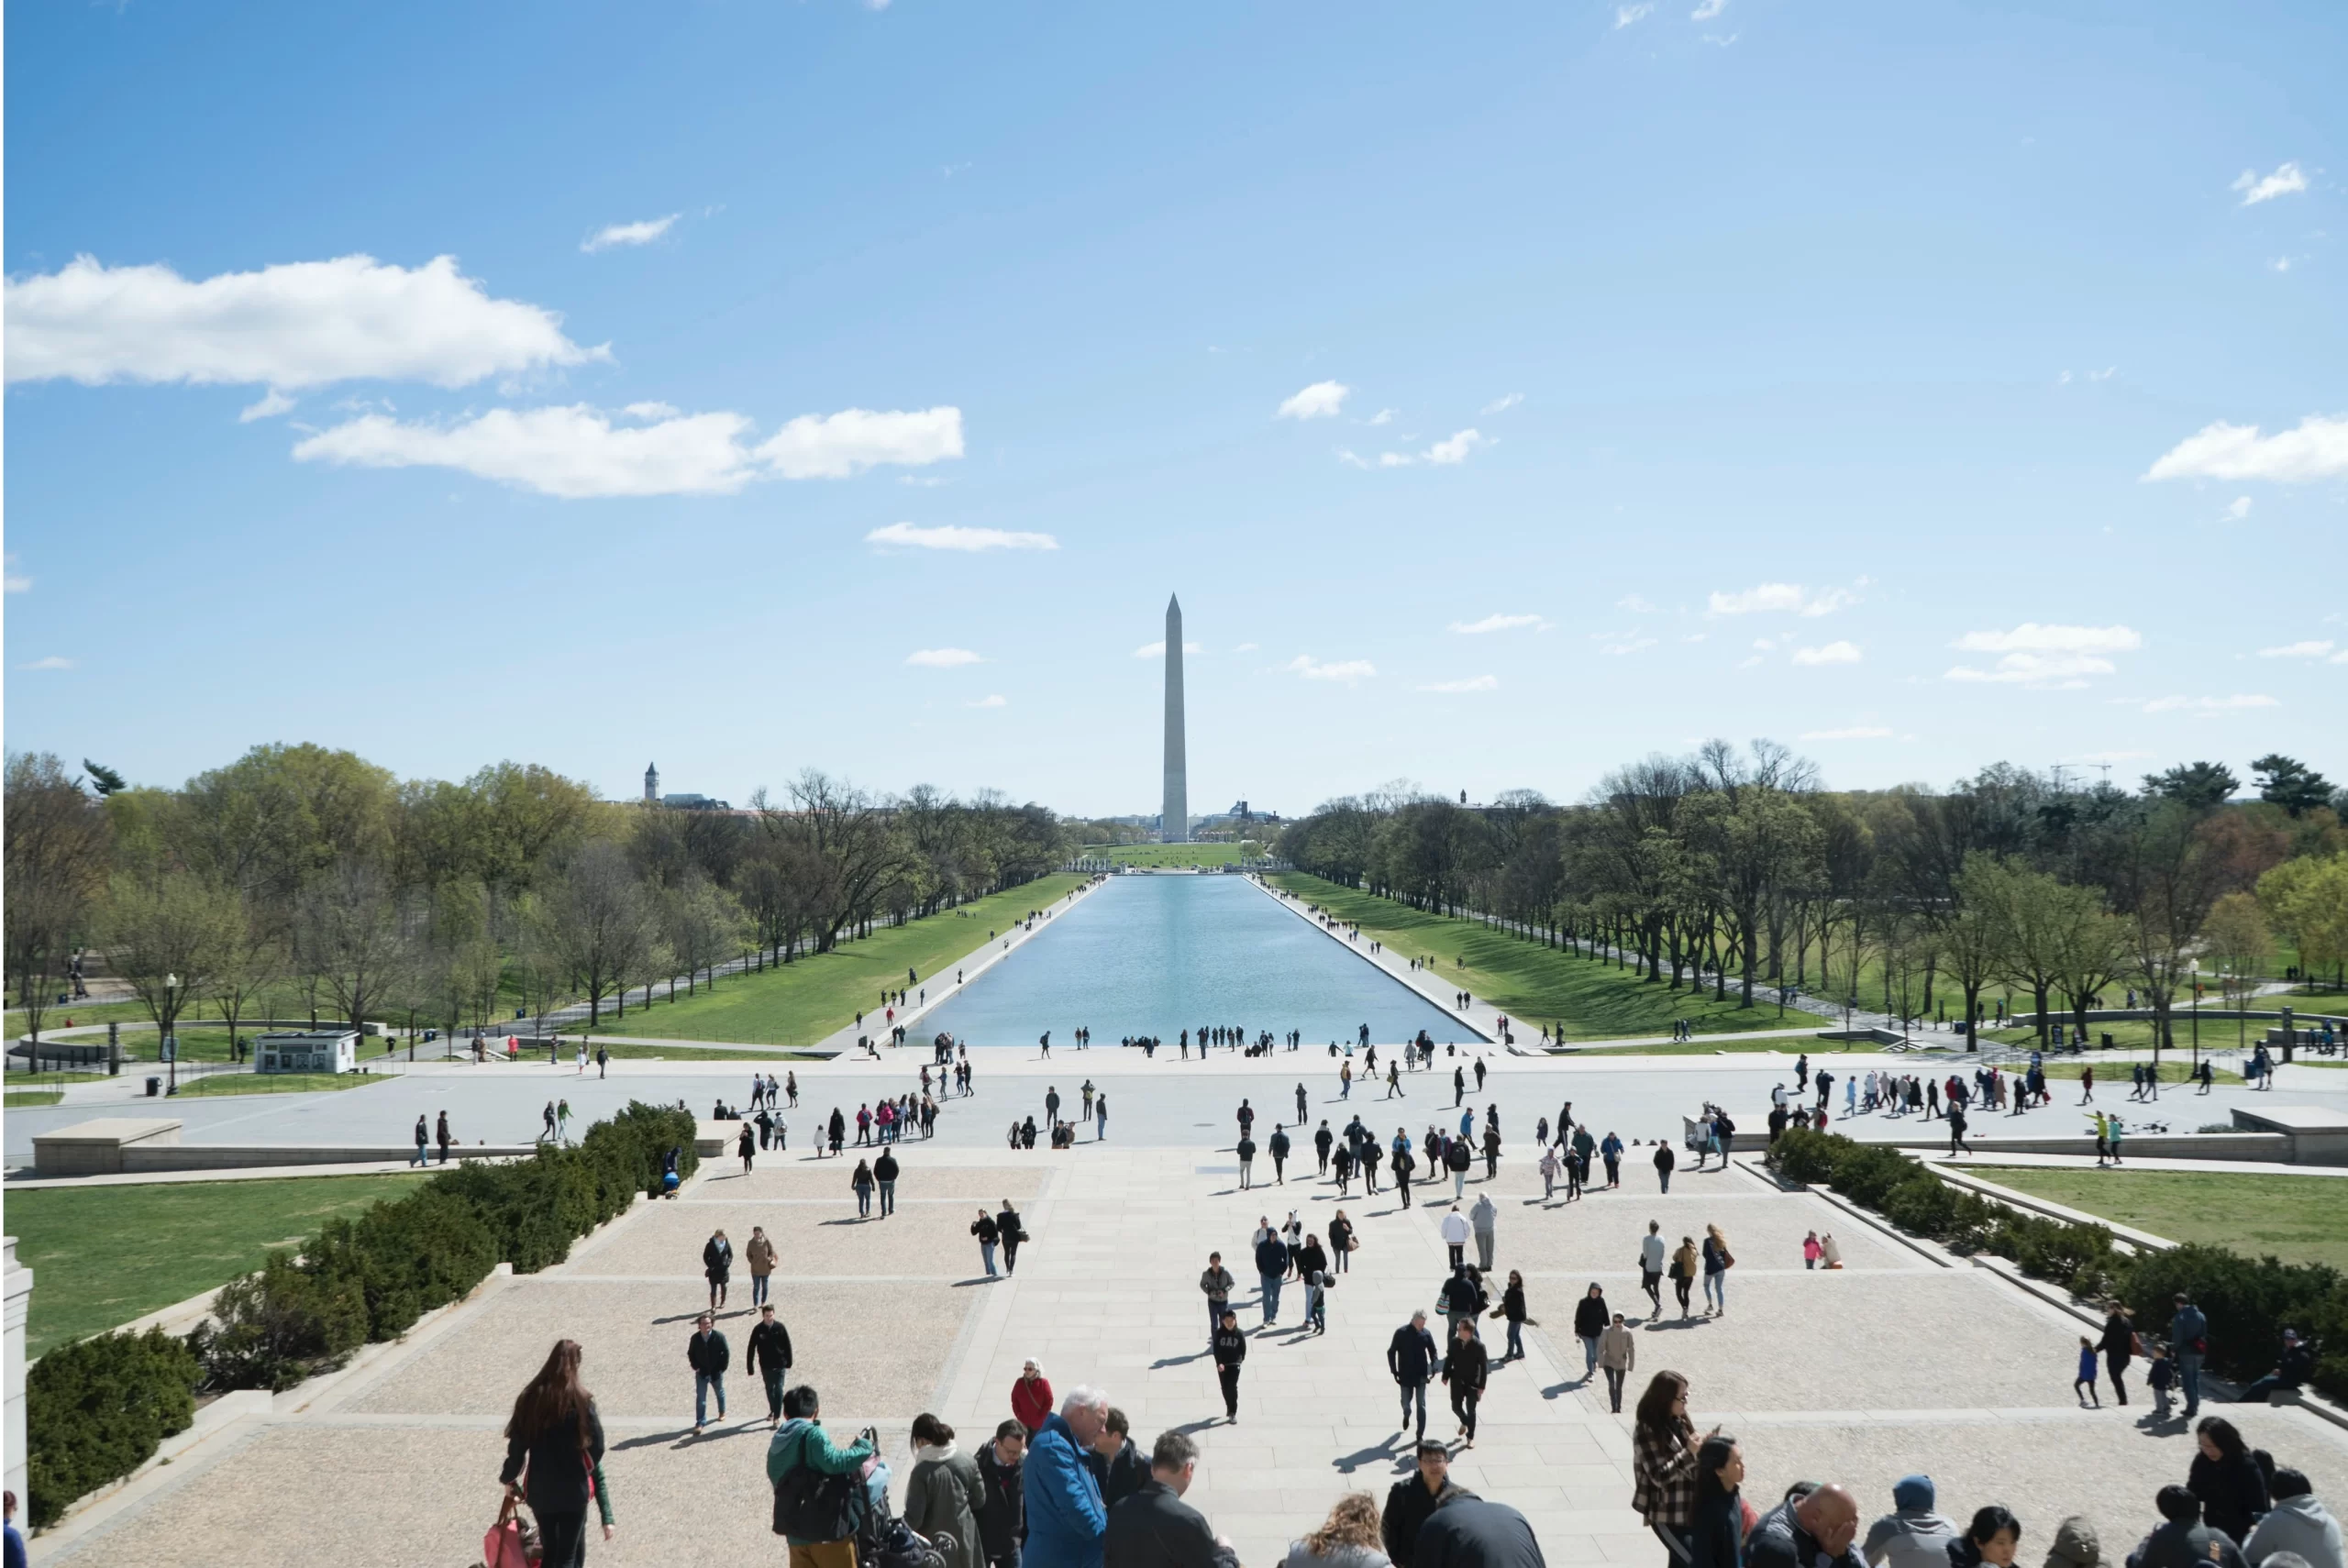 Washington Monument, Washington, United States Published on May 21, 2016 SONY, ILCE-7S Free to use under the Unsplash License